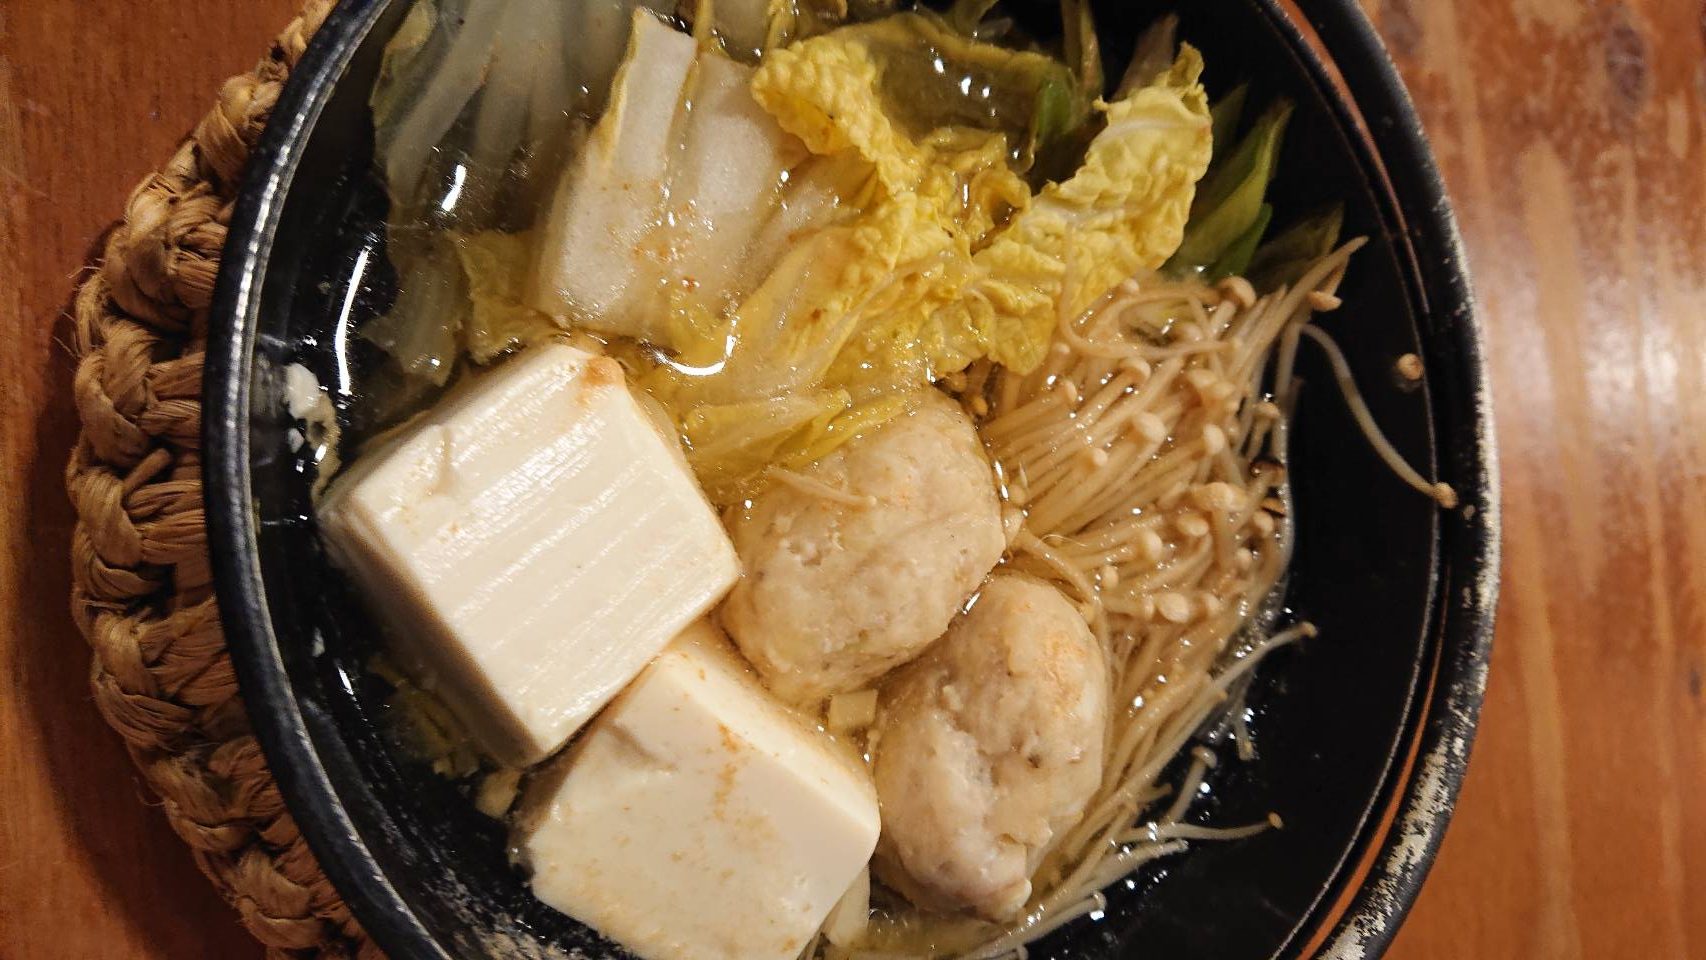 ホッケの団子鍋 海の恵み 食の底力 Japan 公式レシピサイト